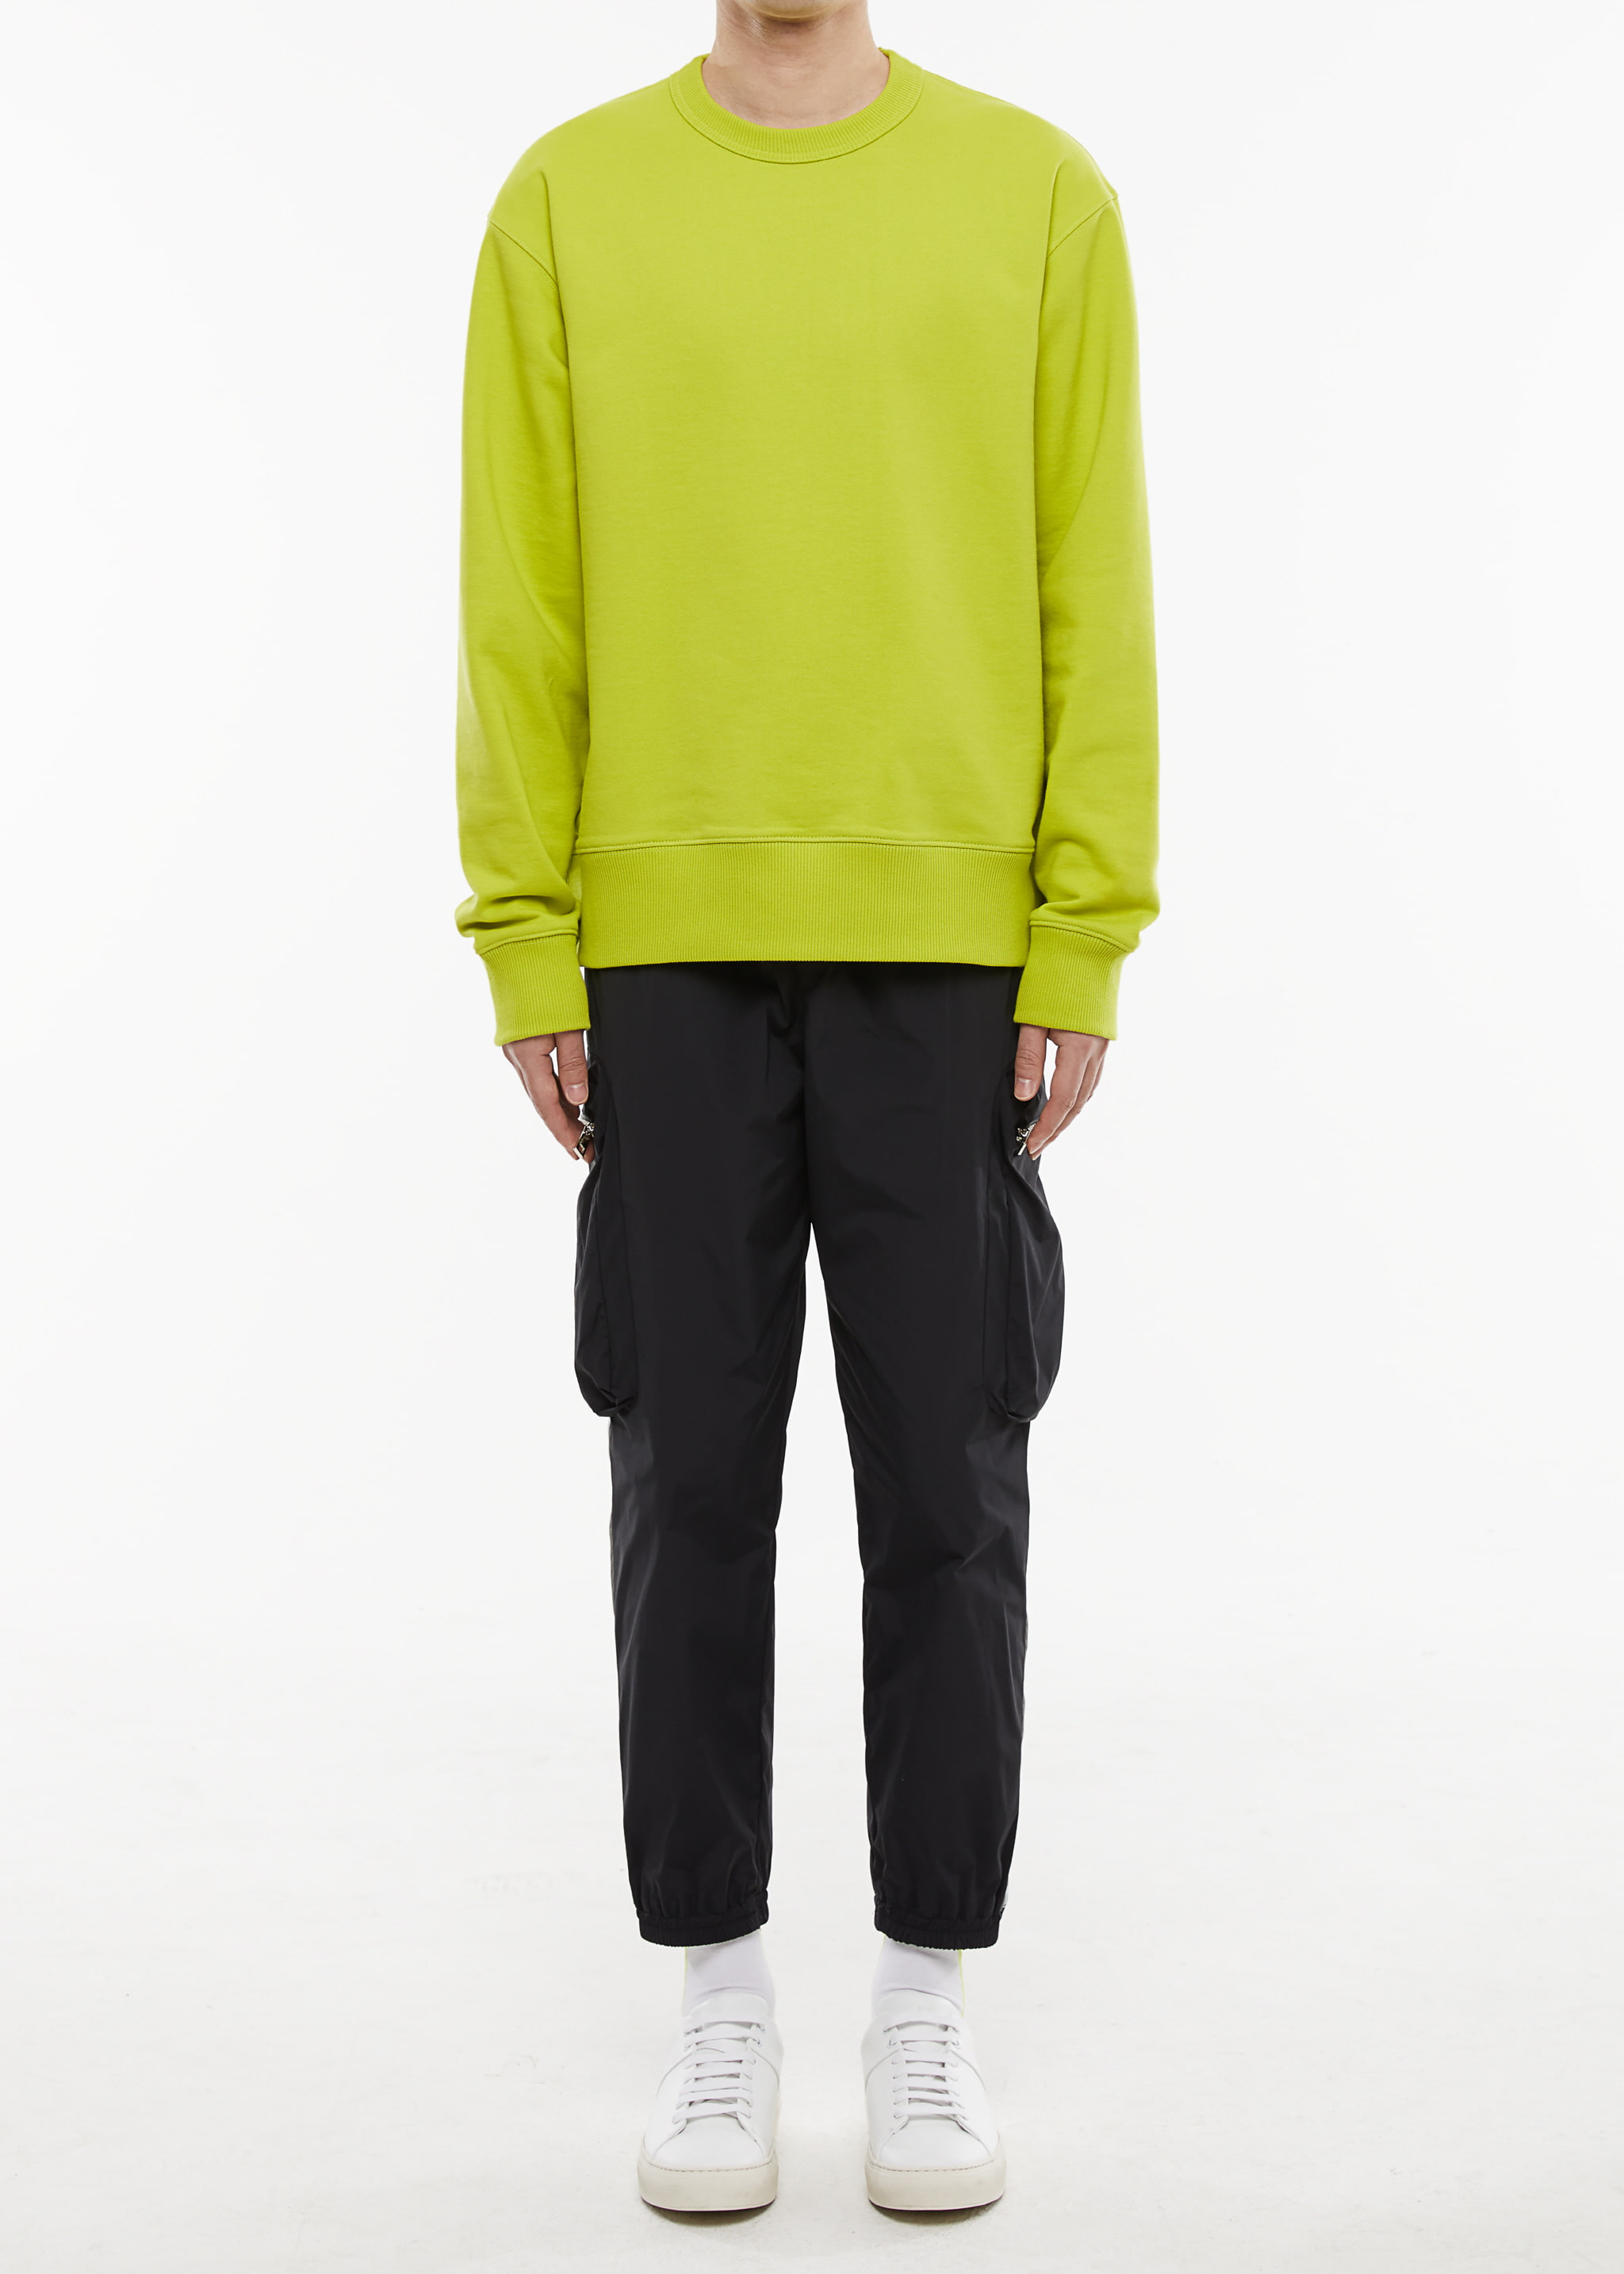 Errday Sweatshirt (Lime)